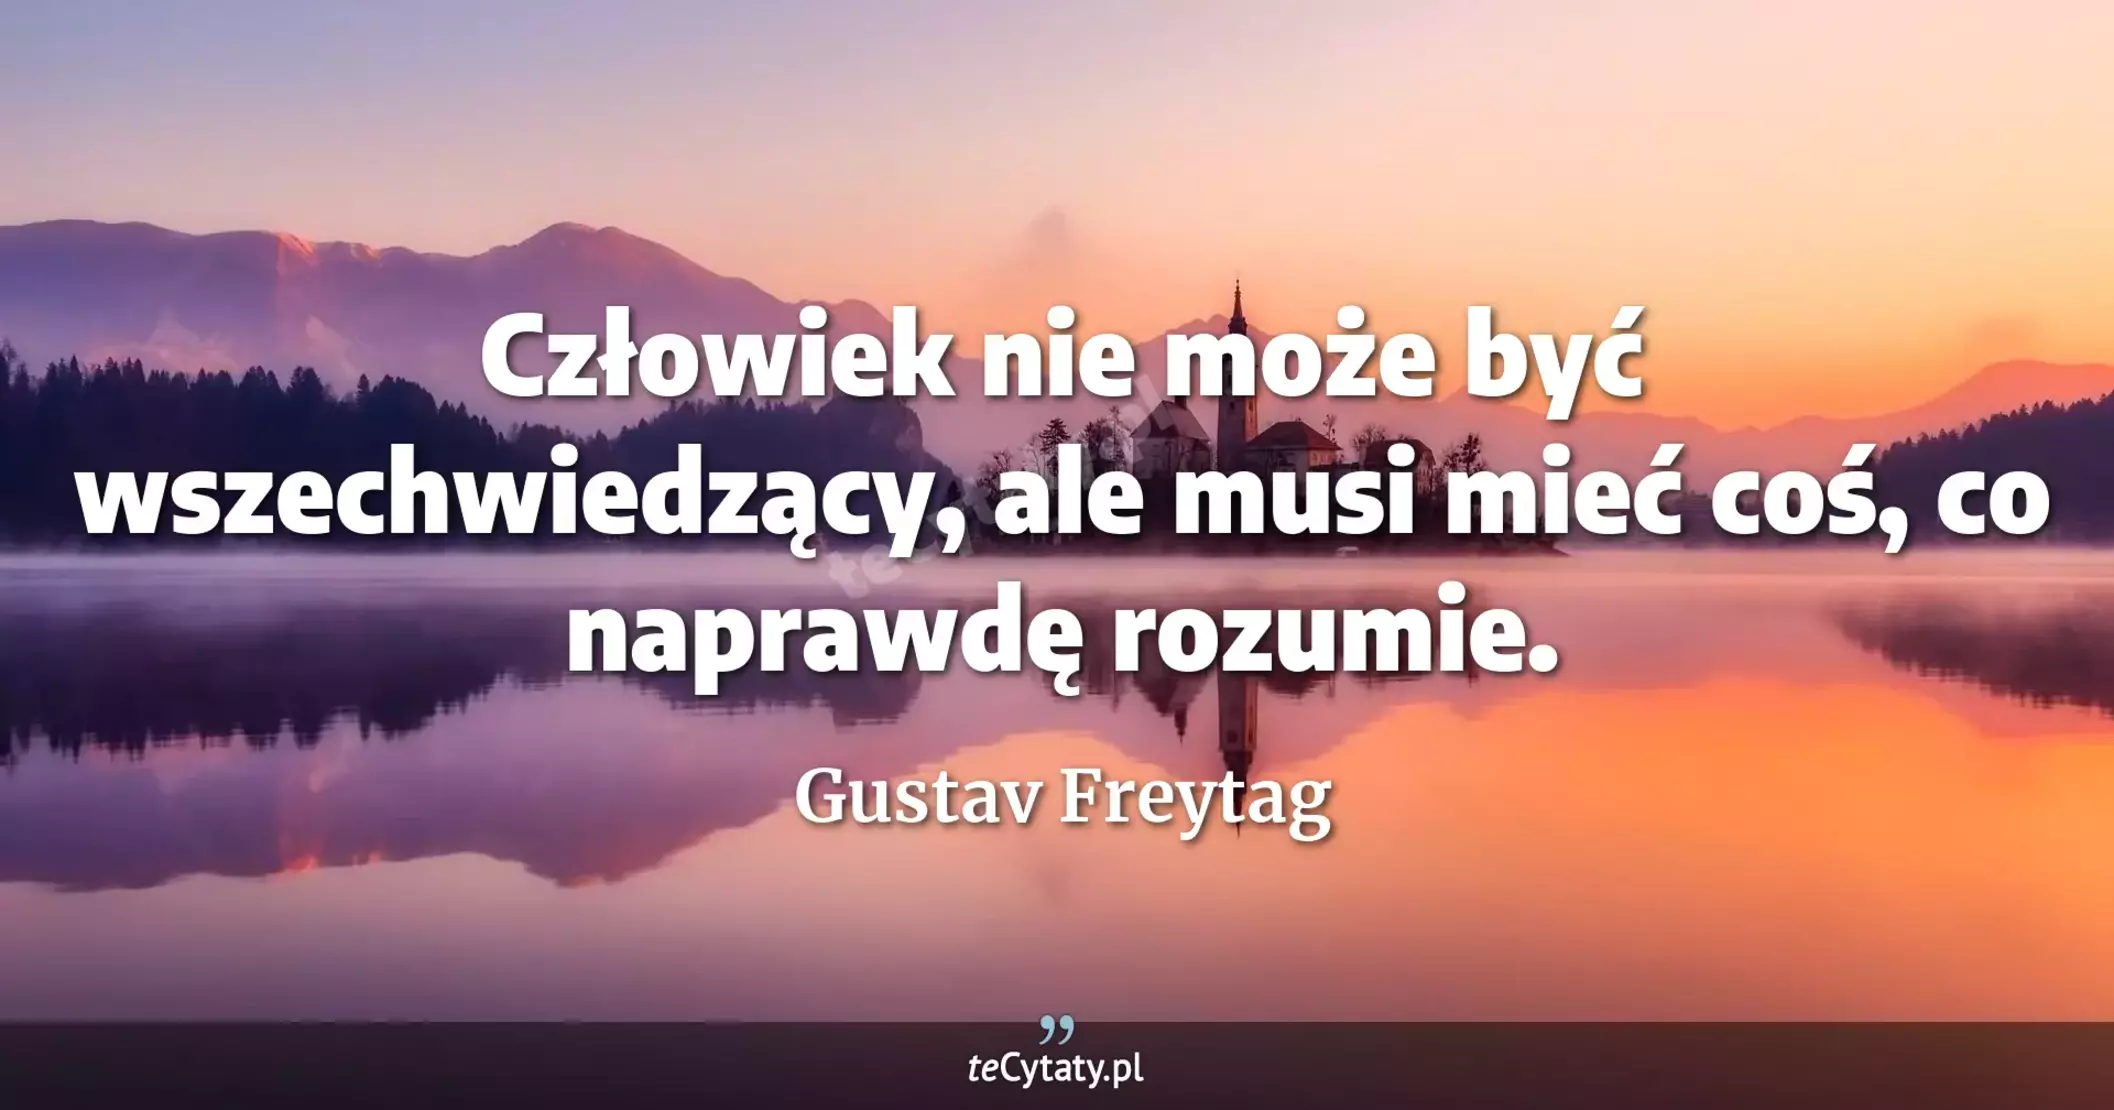 Człowiek nie może być wszechwiedzący, ale musi mieć coś, co naprawdę rozumie. - Gustav Freytag